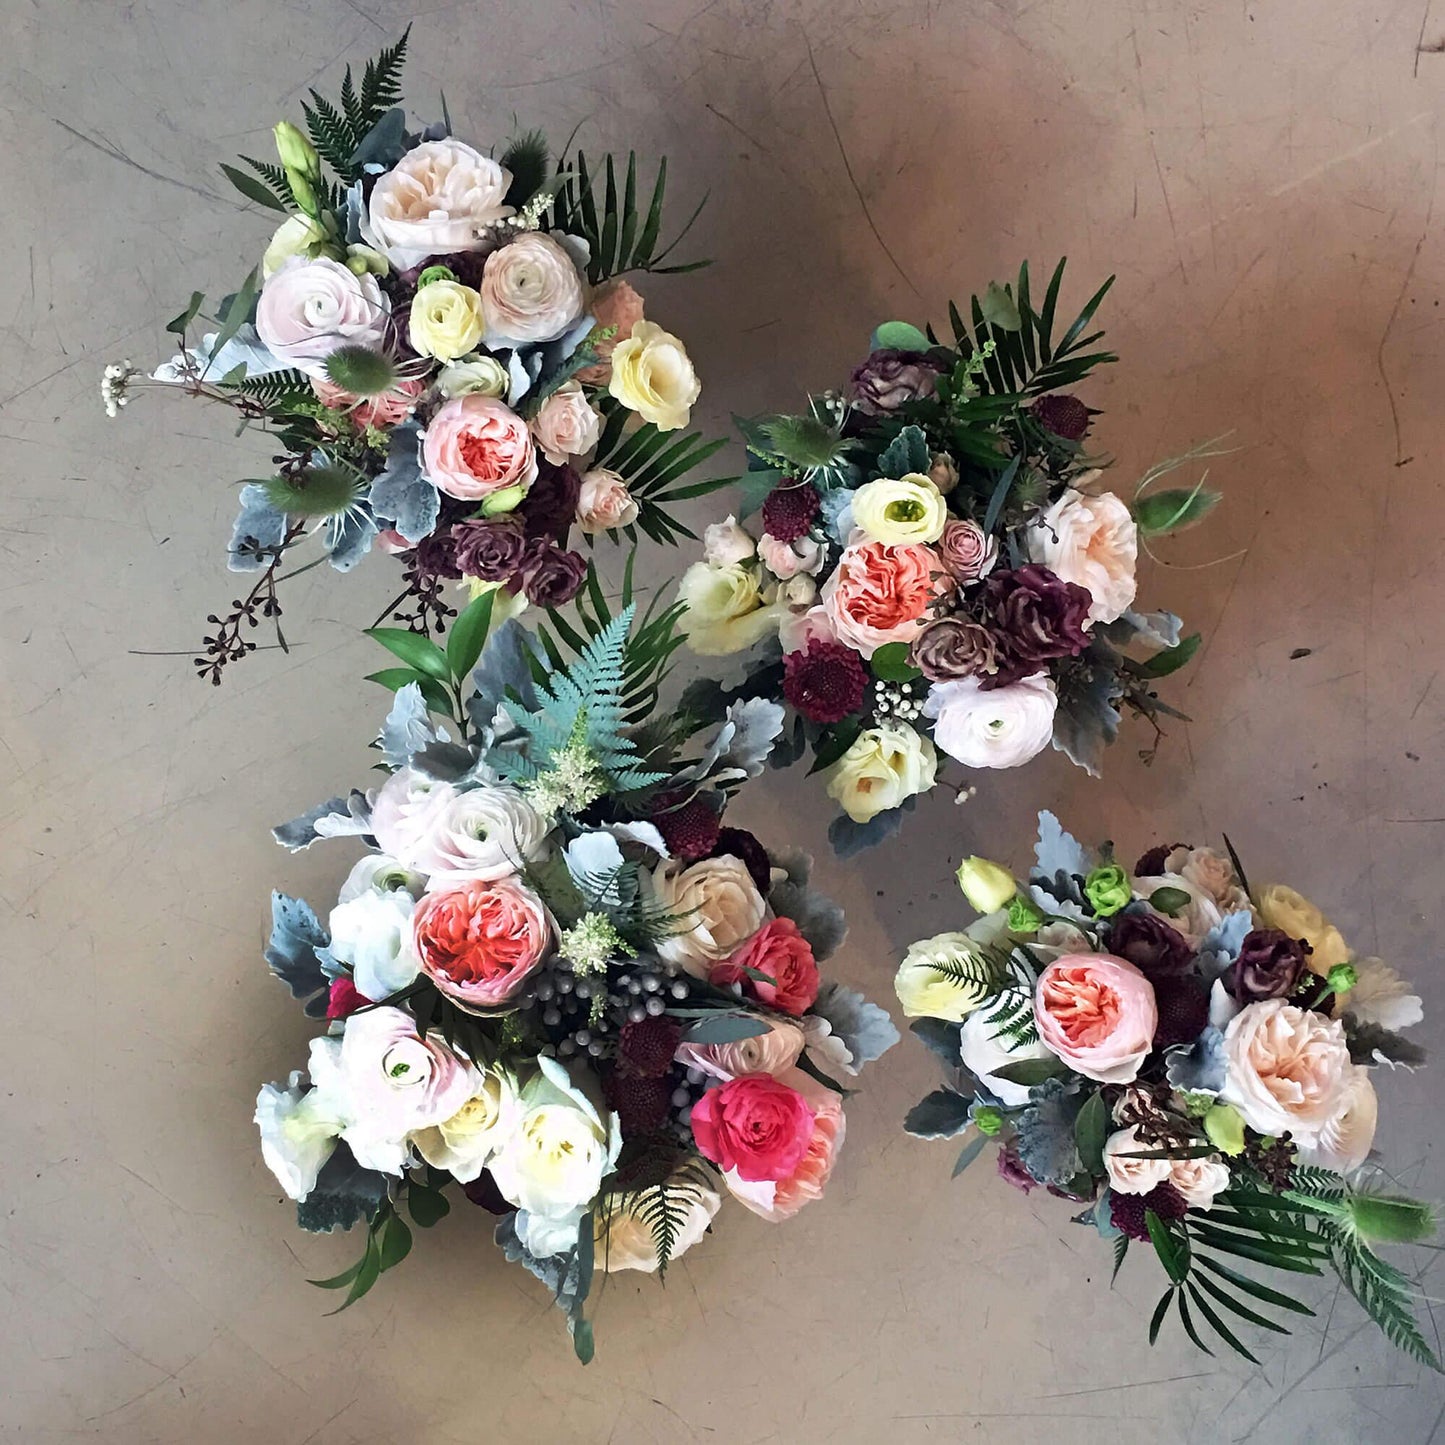 Attendants bouquets, bridal bouquets, wedding florist, Toronto weddings, Quince Flowers